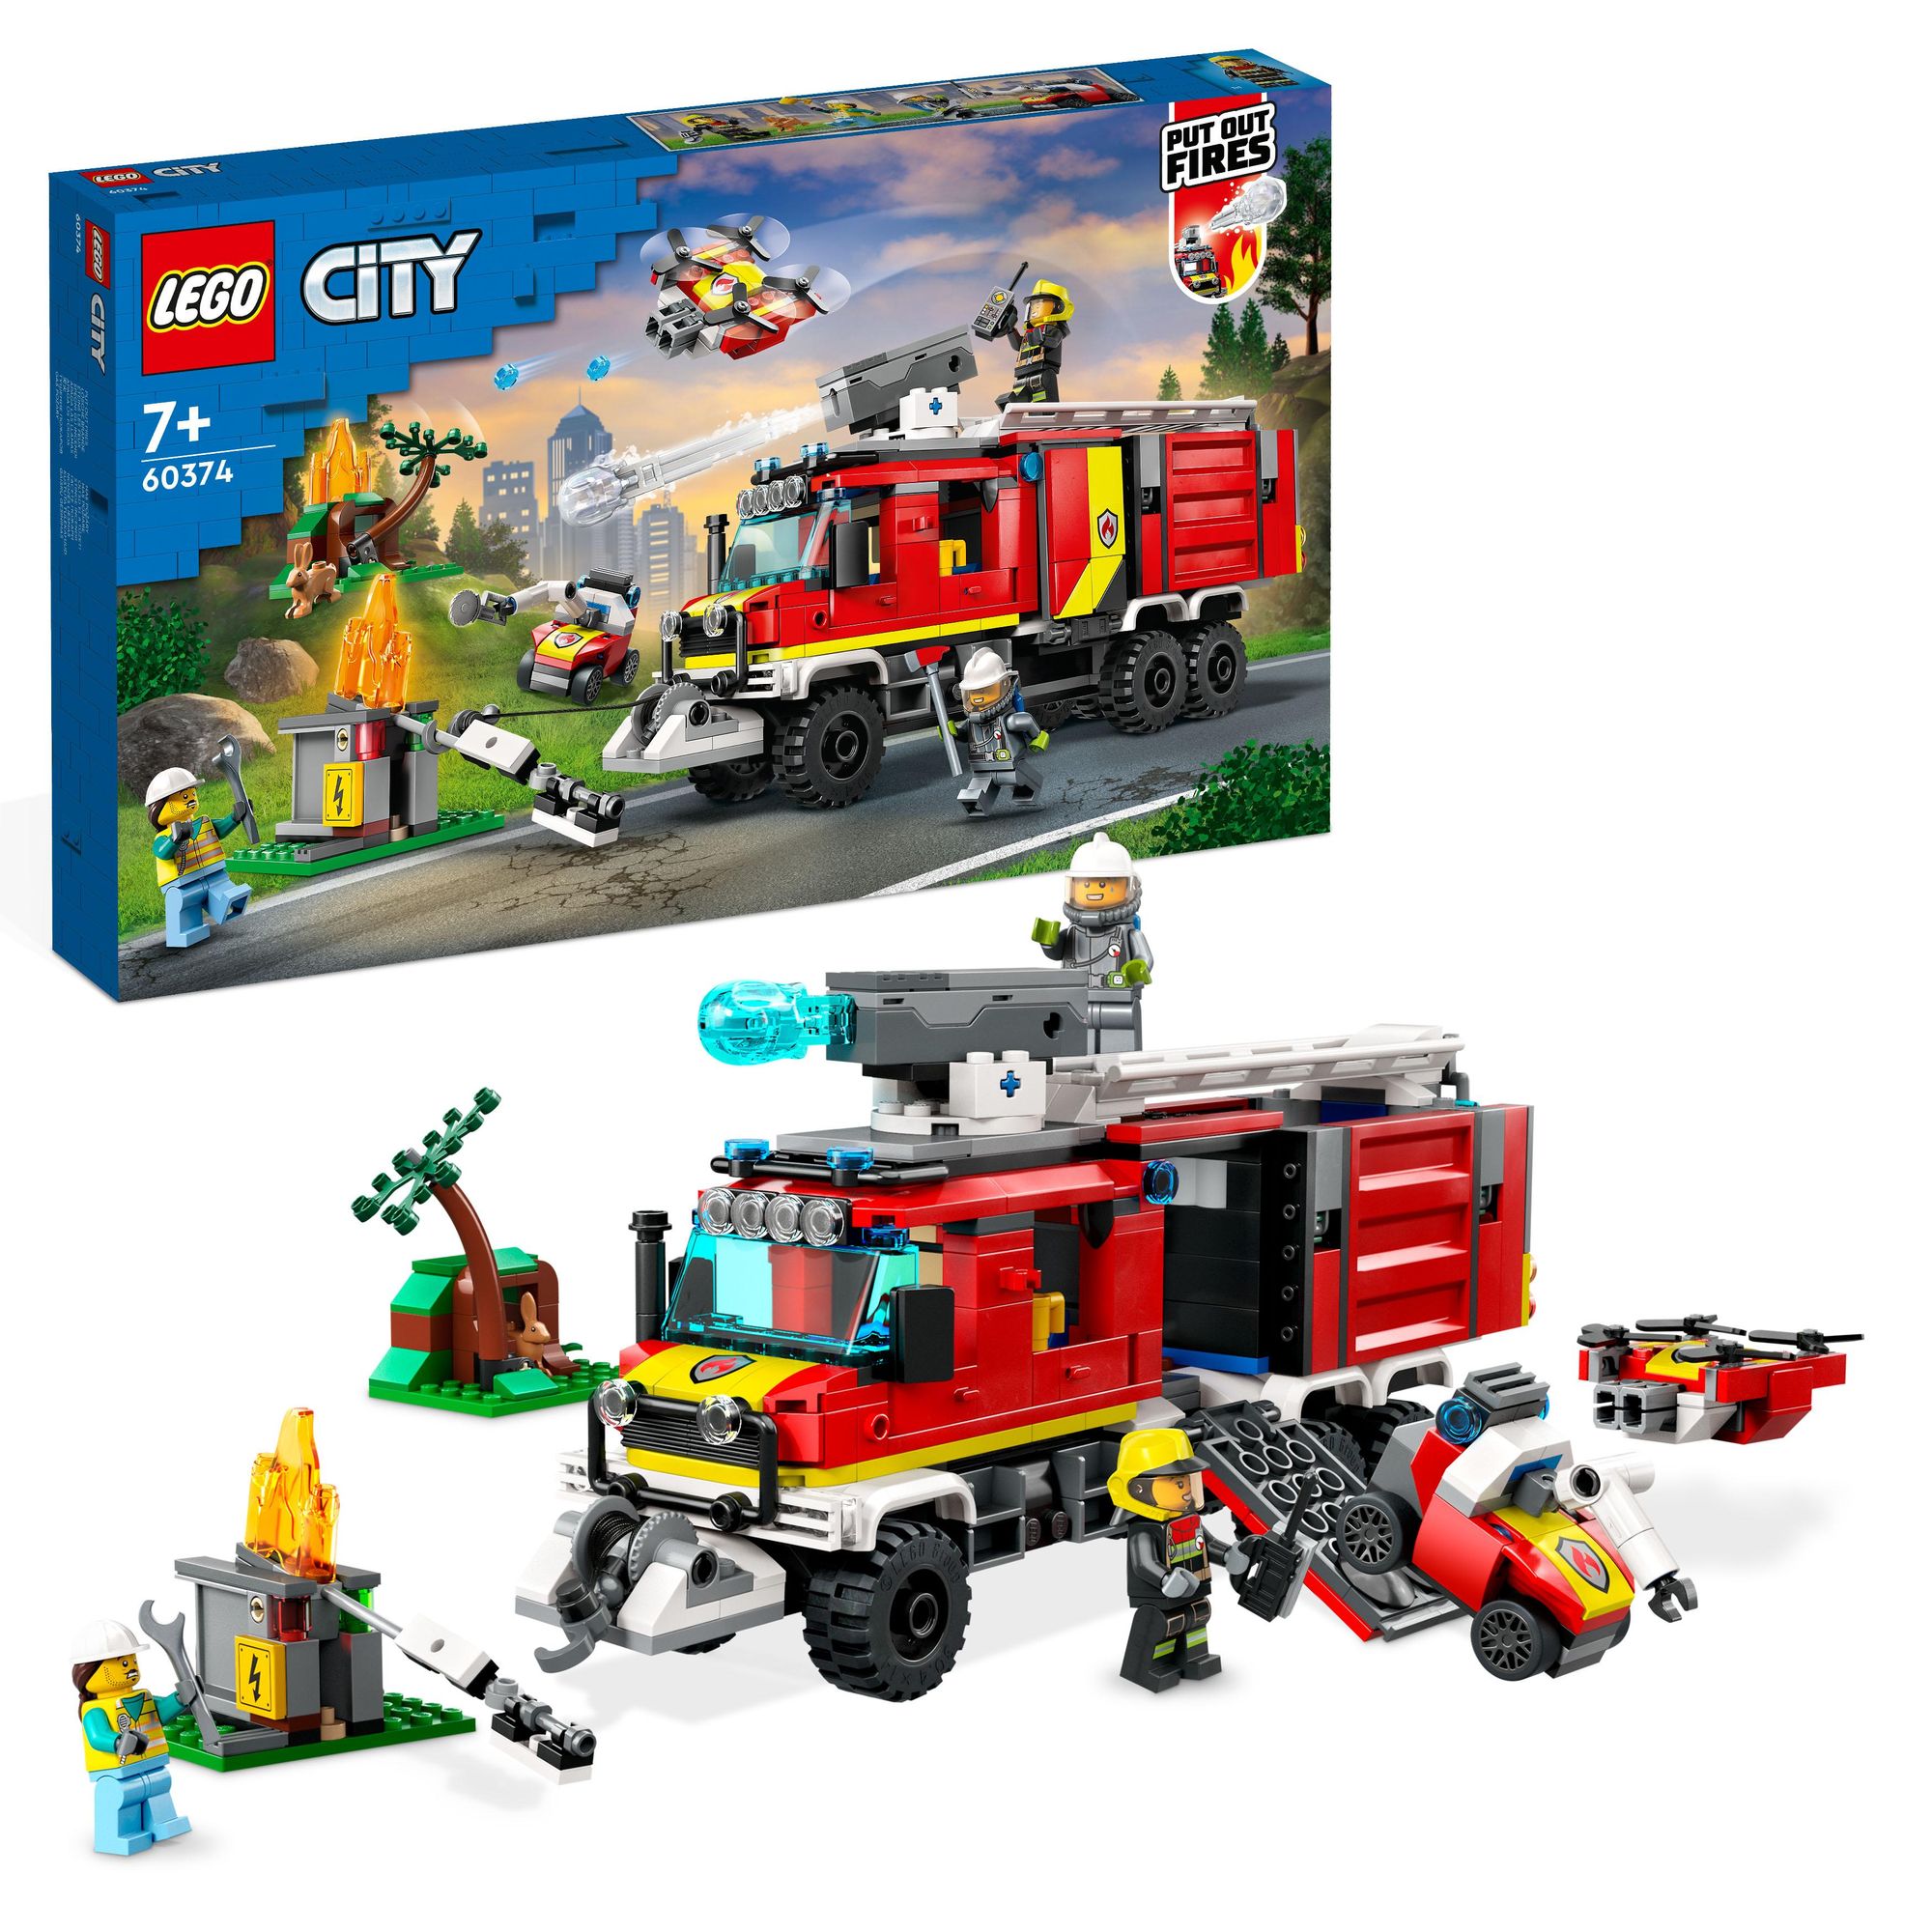 LEGO City 60374 Einsatzleitwagen der kaufen - Feuerwehrauto-Spielzeug\' Feuerwehr, Spielwaren